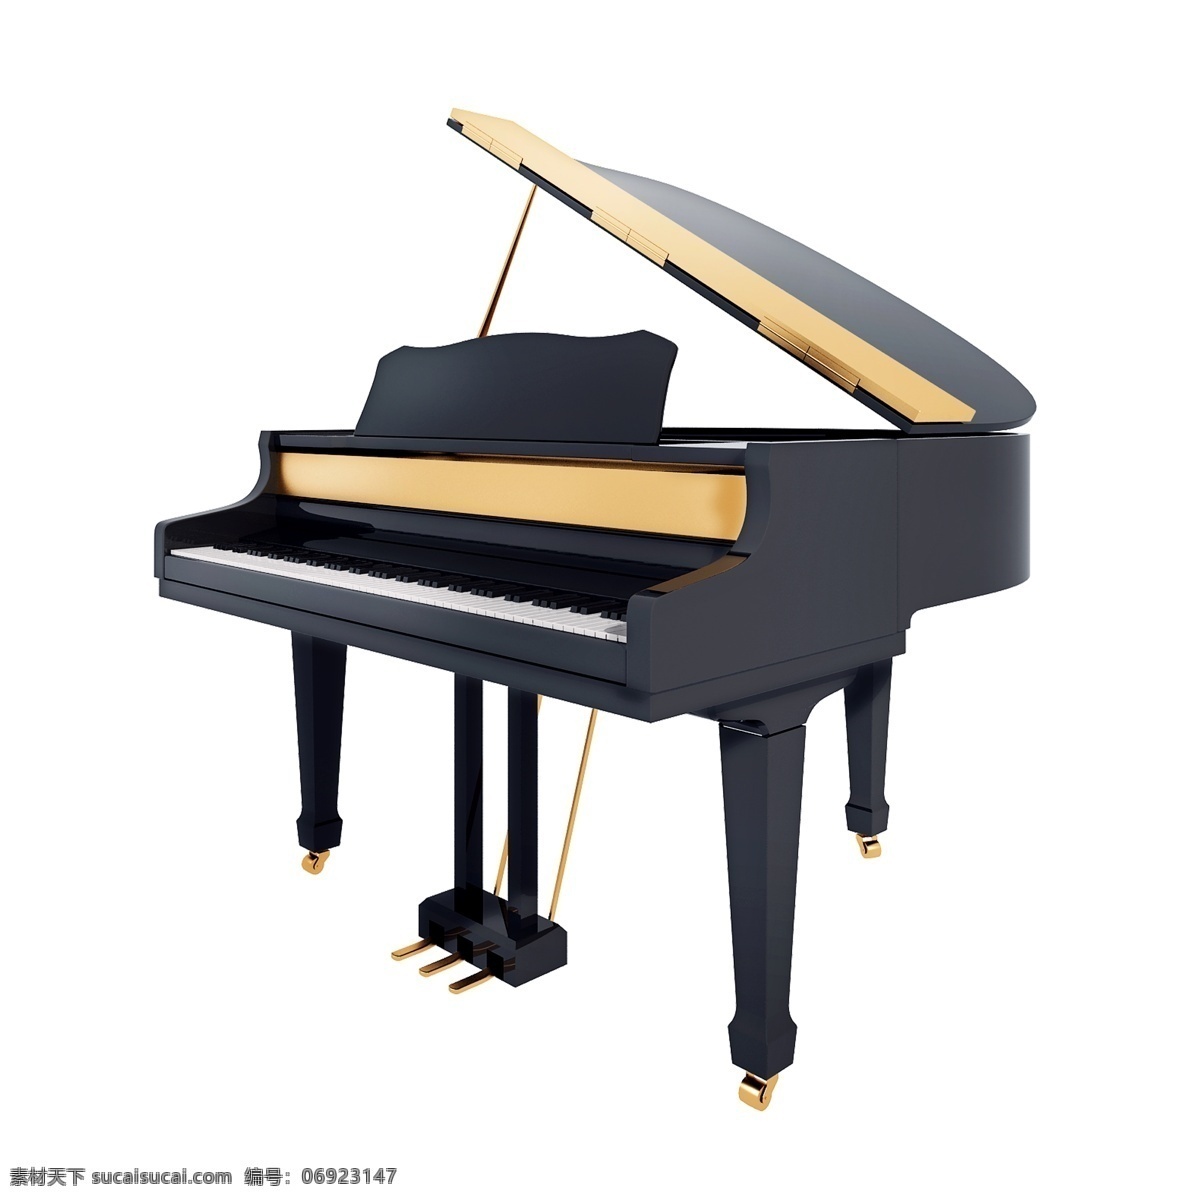 质感 镀金 钢琴 图 黑色钢琴 立体 仿真 精致 3d 创意 套图 png图 音乐 乐器